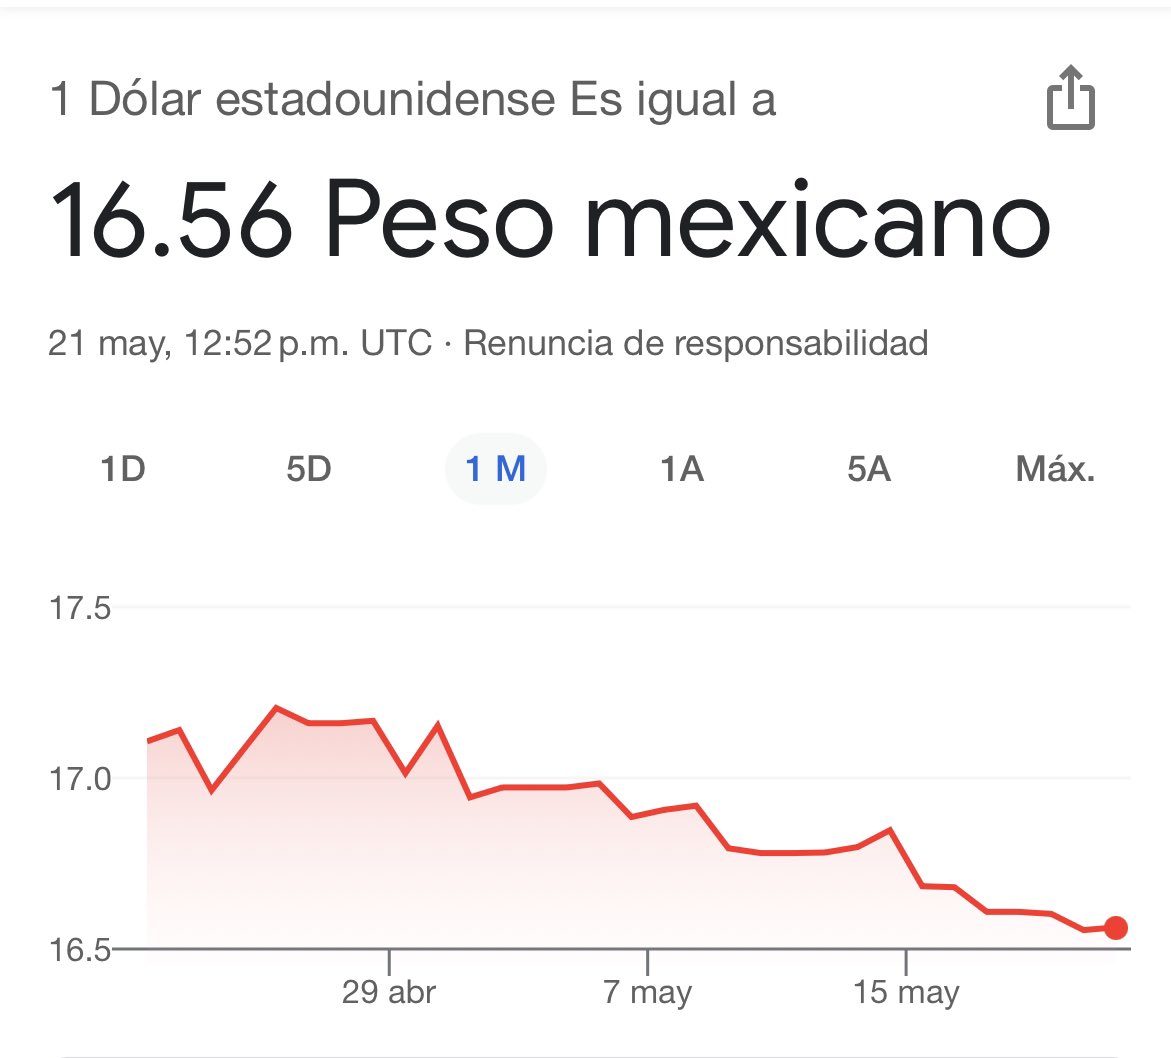 Sigue fortaleciéndose el peso mexicano. Y dice @DeniseDresserG que la economía con AMLO ha sido caótica… Sus mentiras son ya tan grotescas… Nadie les ceee ya.